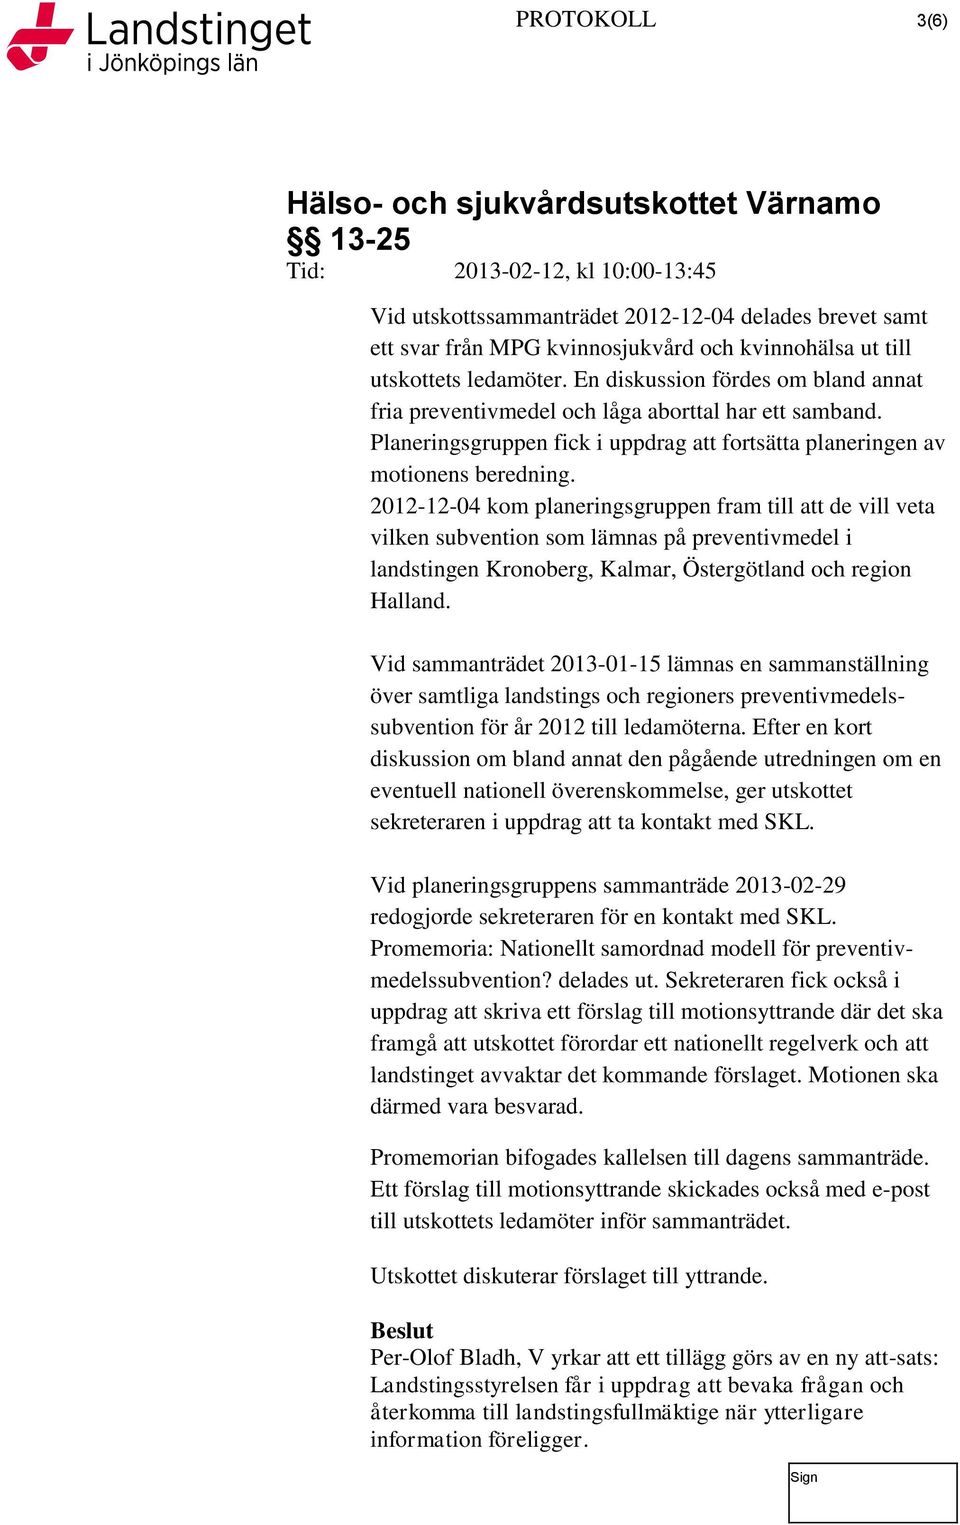 2012-12-04 kom planeringsgruppen fram till att de vill veta vilken subvention som lämnas på preventivmedel i landstingen Kronoberg, Kalmar, Östergötland och region Halland.